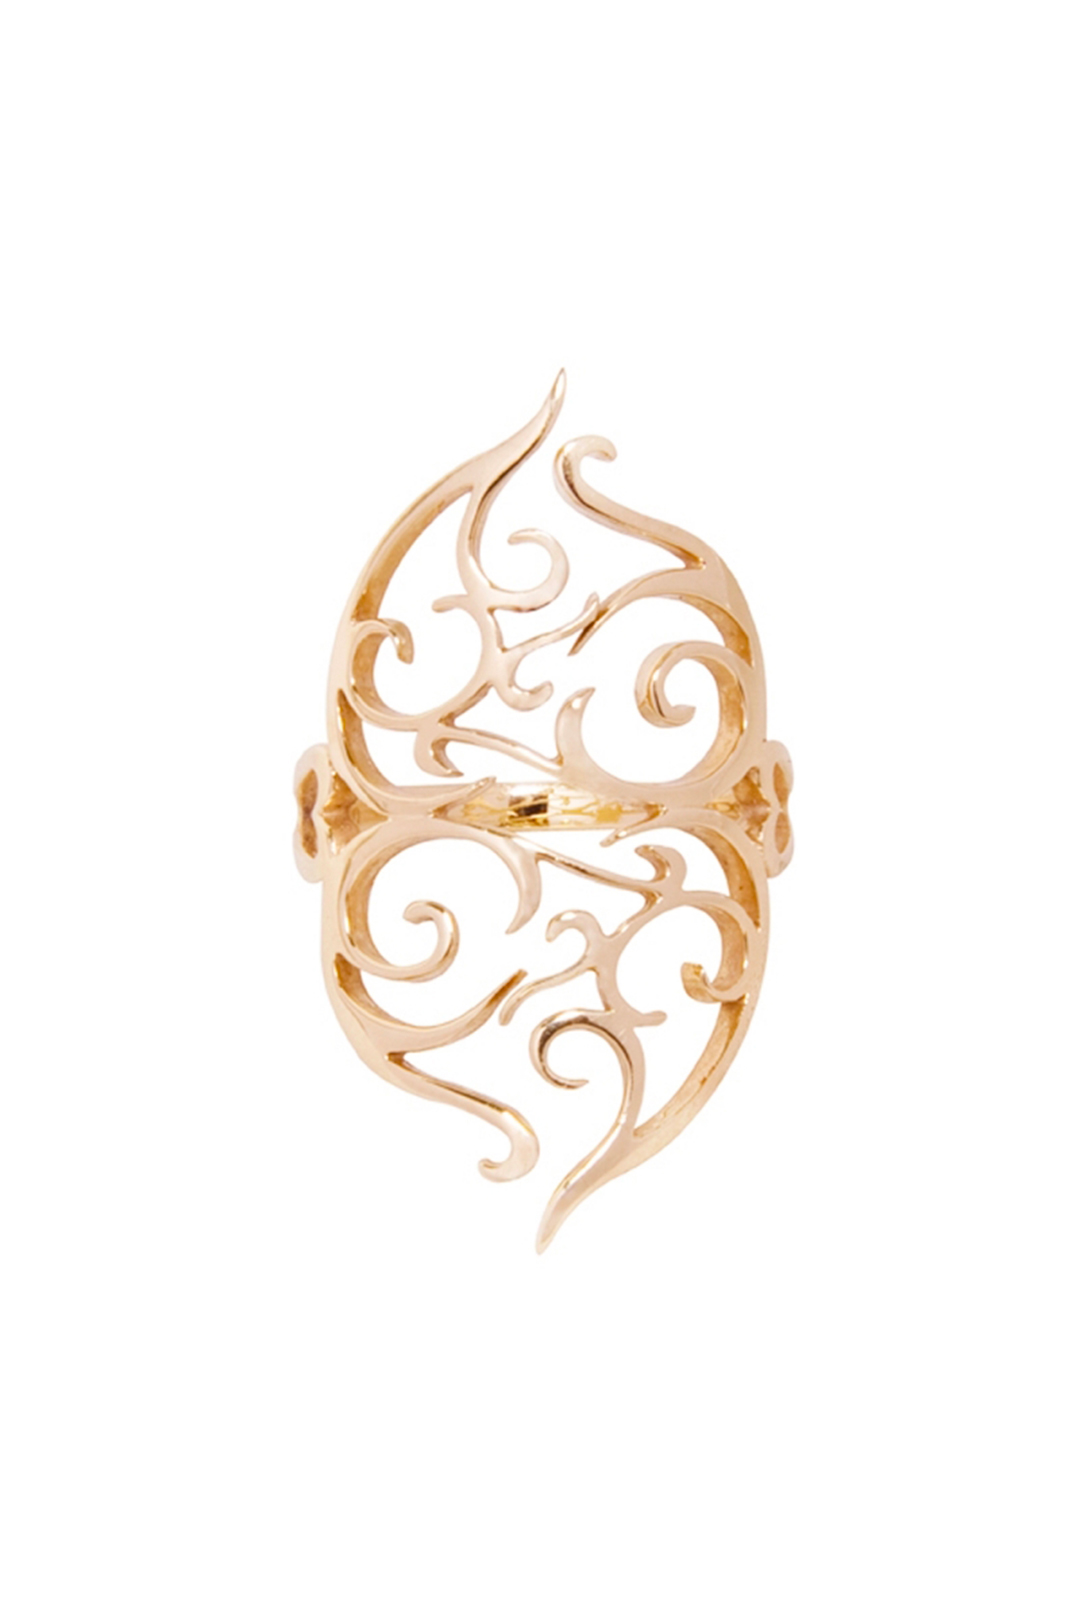 Photographie packshot sur fond blanc de la bague Reflection en or : elle est composée d'un anneau fin surmonté de deux cœurs collés l'un contre l'autre, formés par des arabesques.